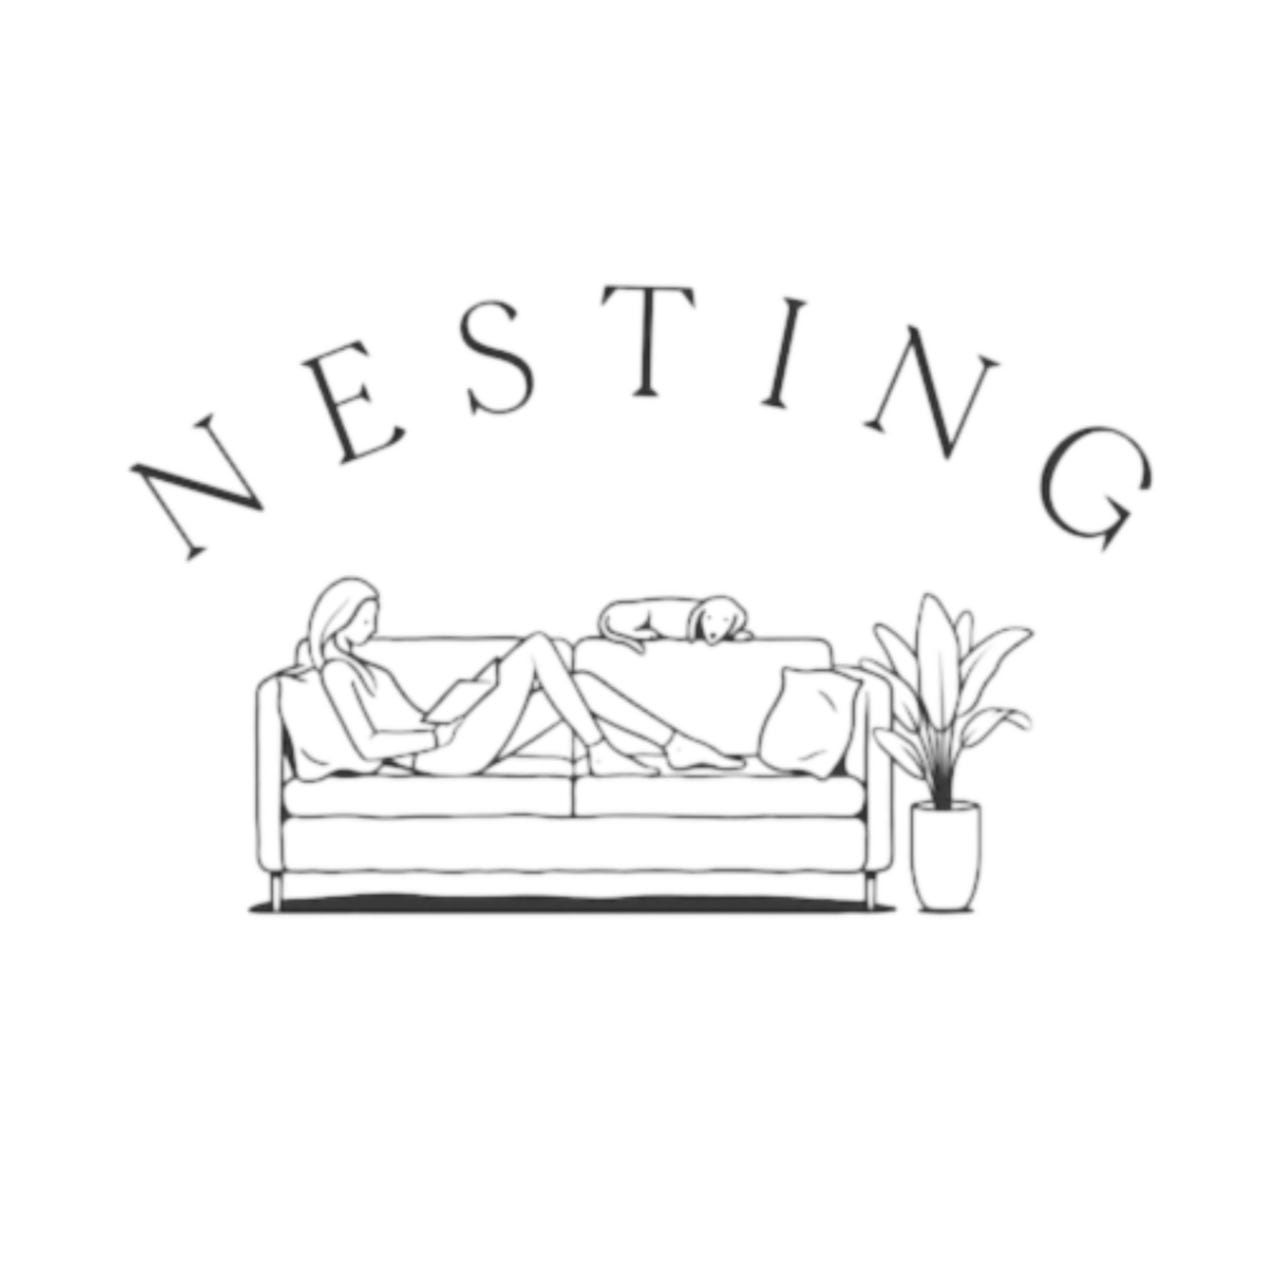 Artwork for Nesting